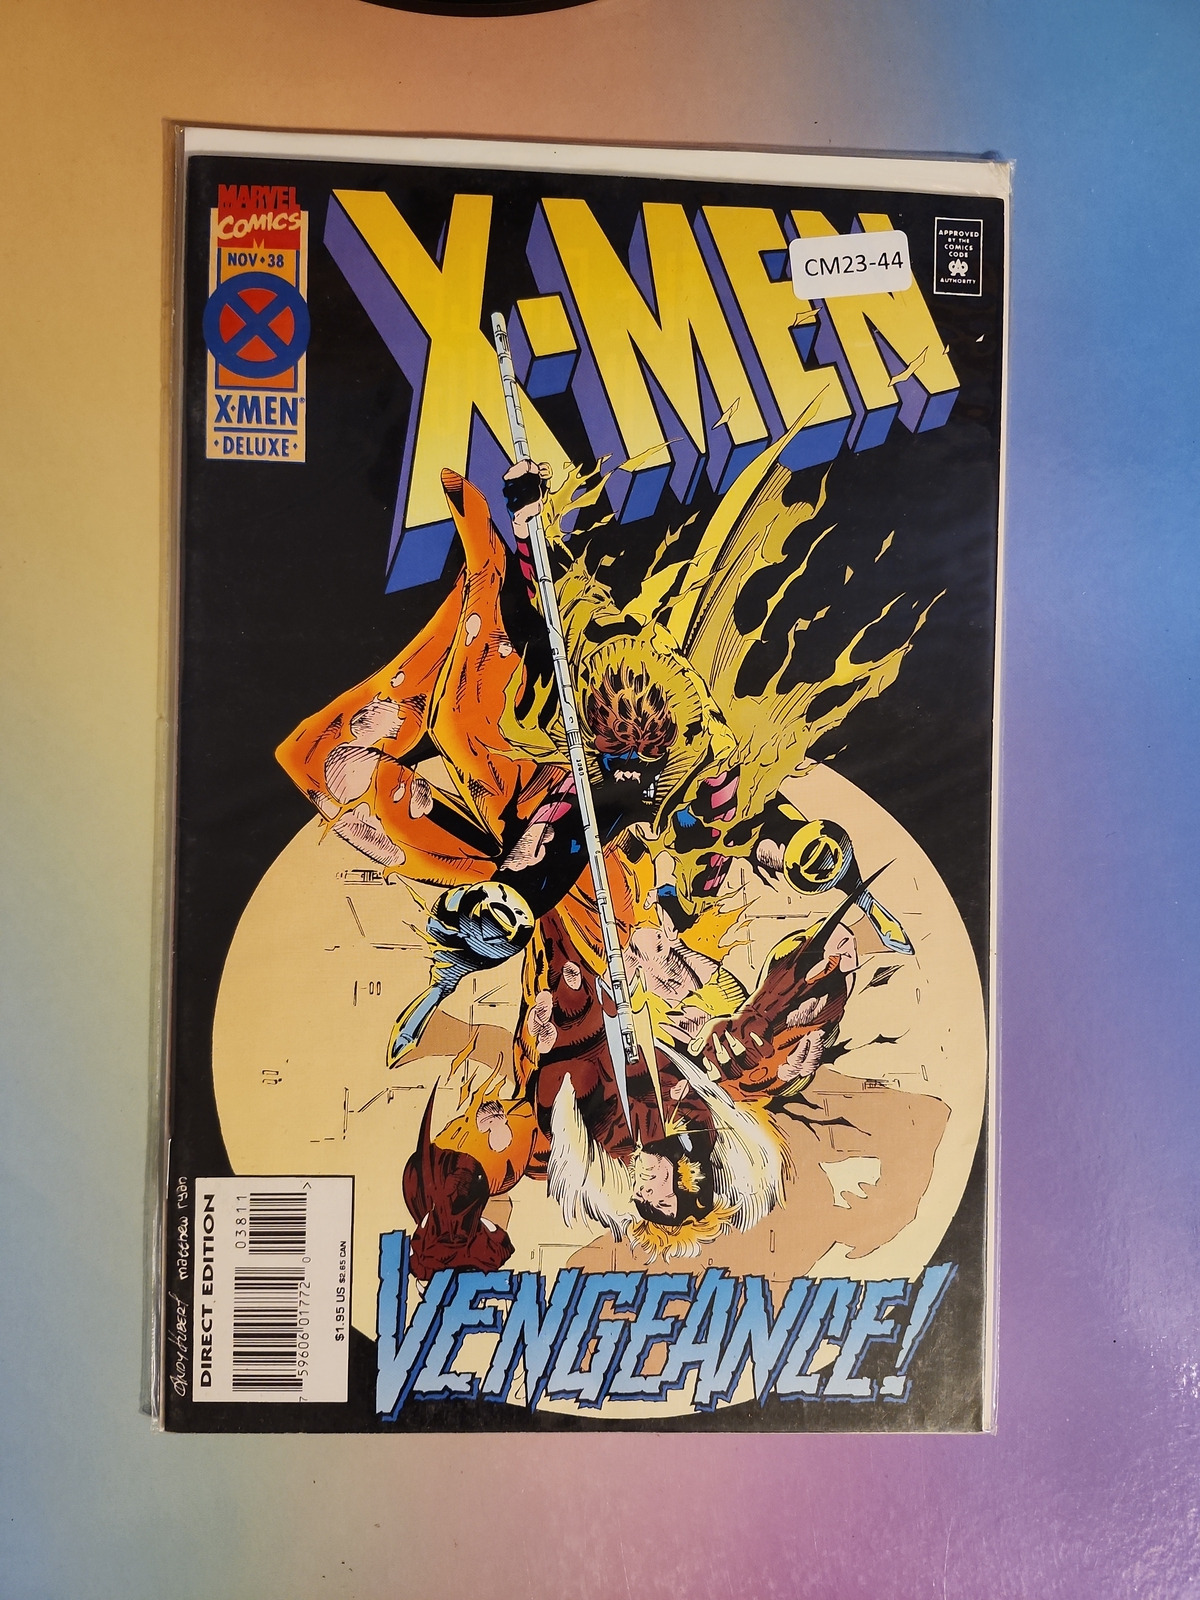 X-MEN #38 VOL. 2 HIGH GRADE MARVEL COMIC BOOK CM23-44